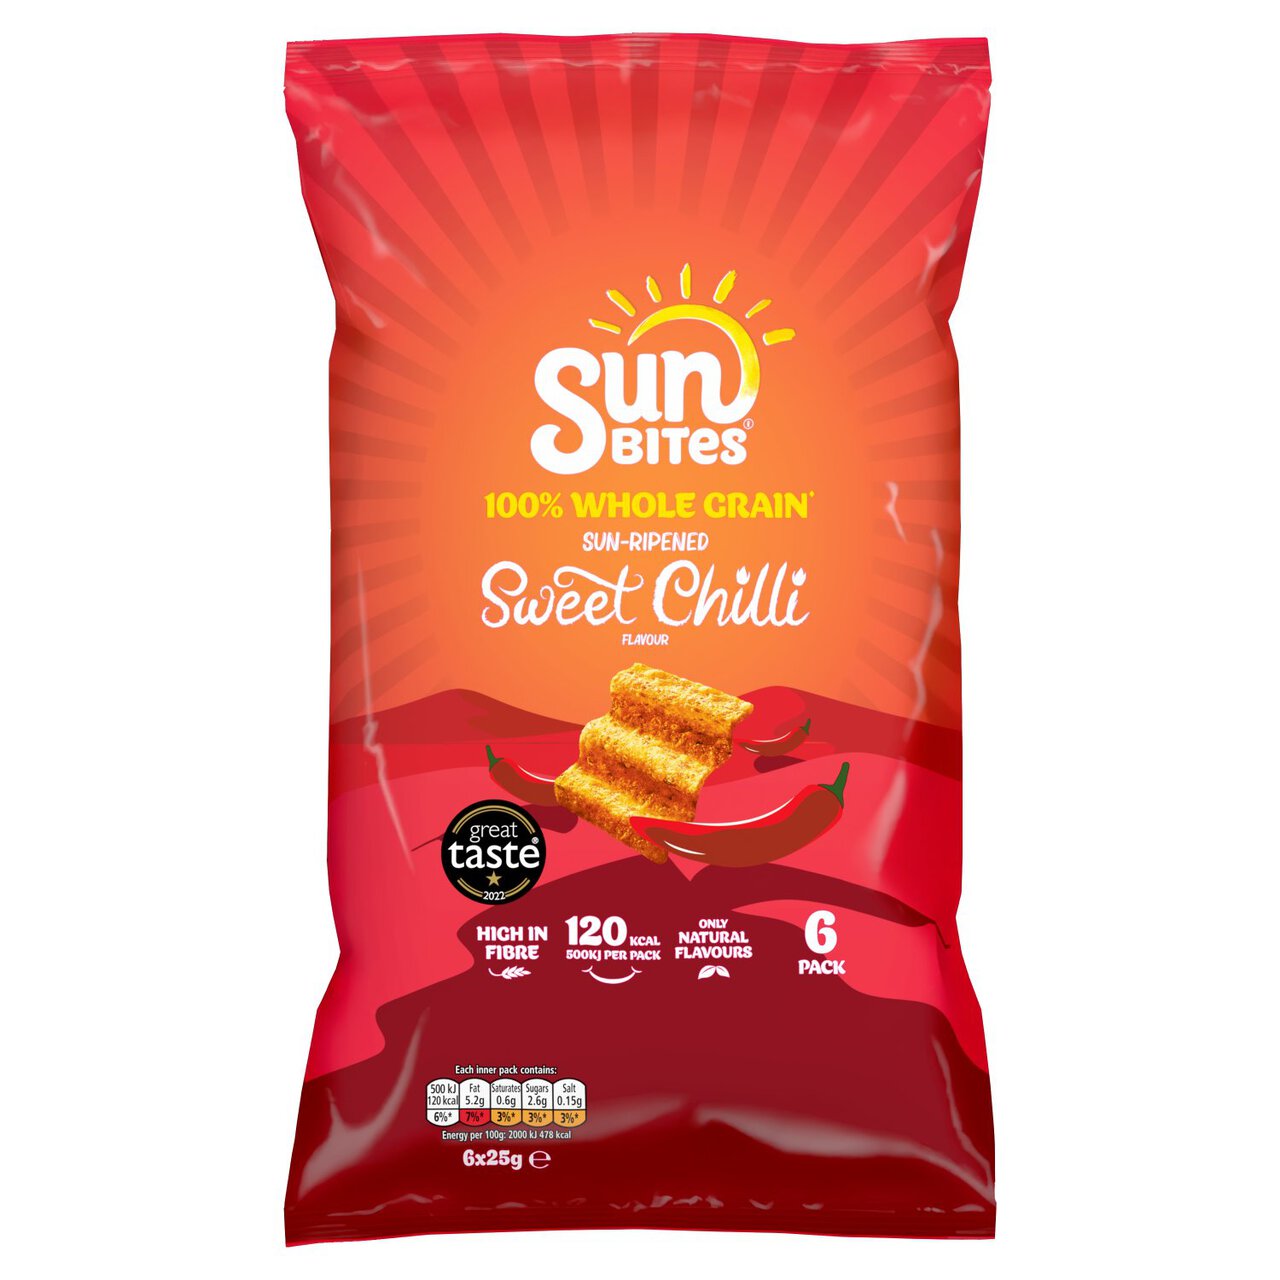 SunBites Sweet Chilli Multigrain Multipack Snacks 6 per pack